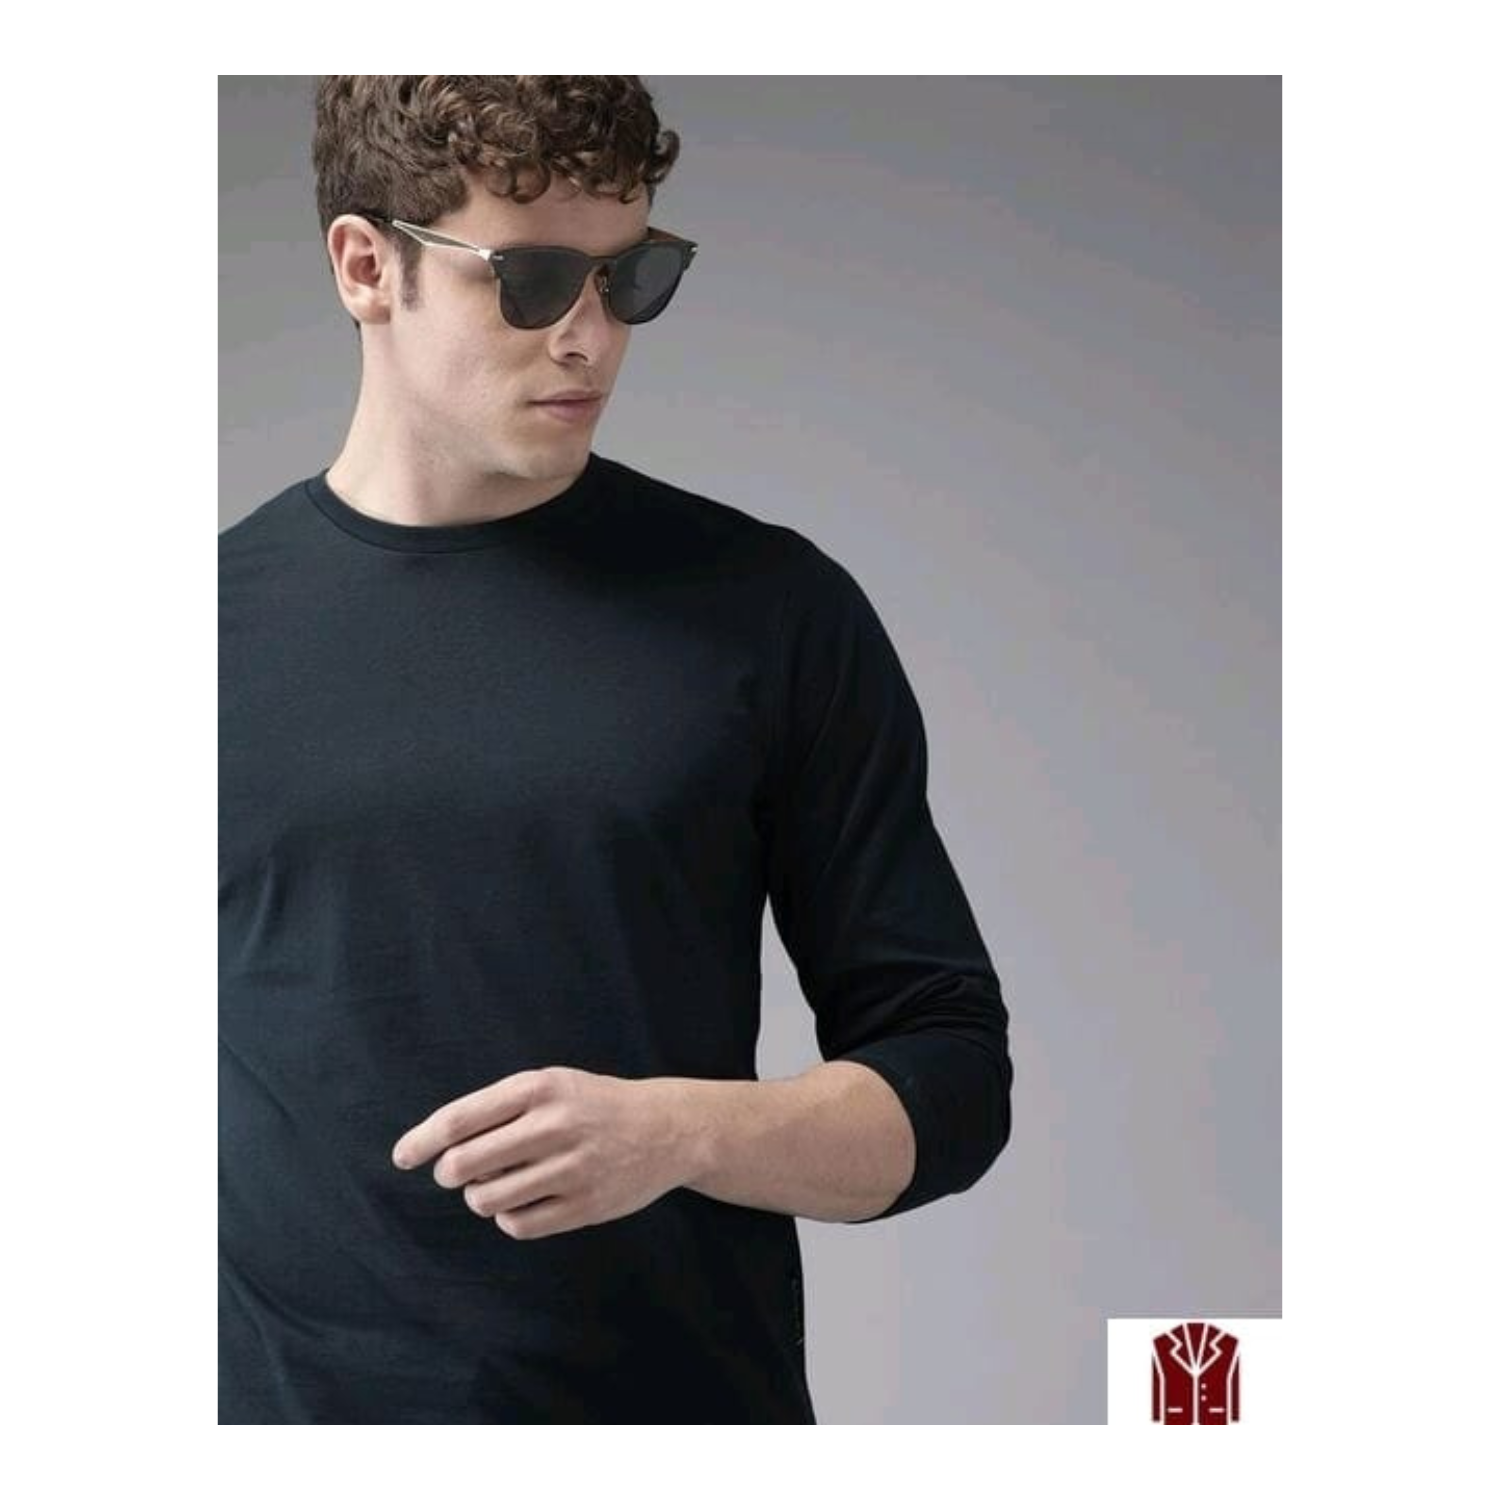 Branded Plain BLACK Full Sleeves Sports Gym T-shirt for Men (Small)